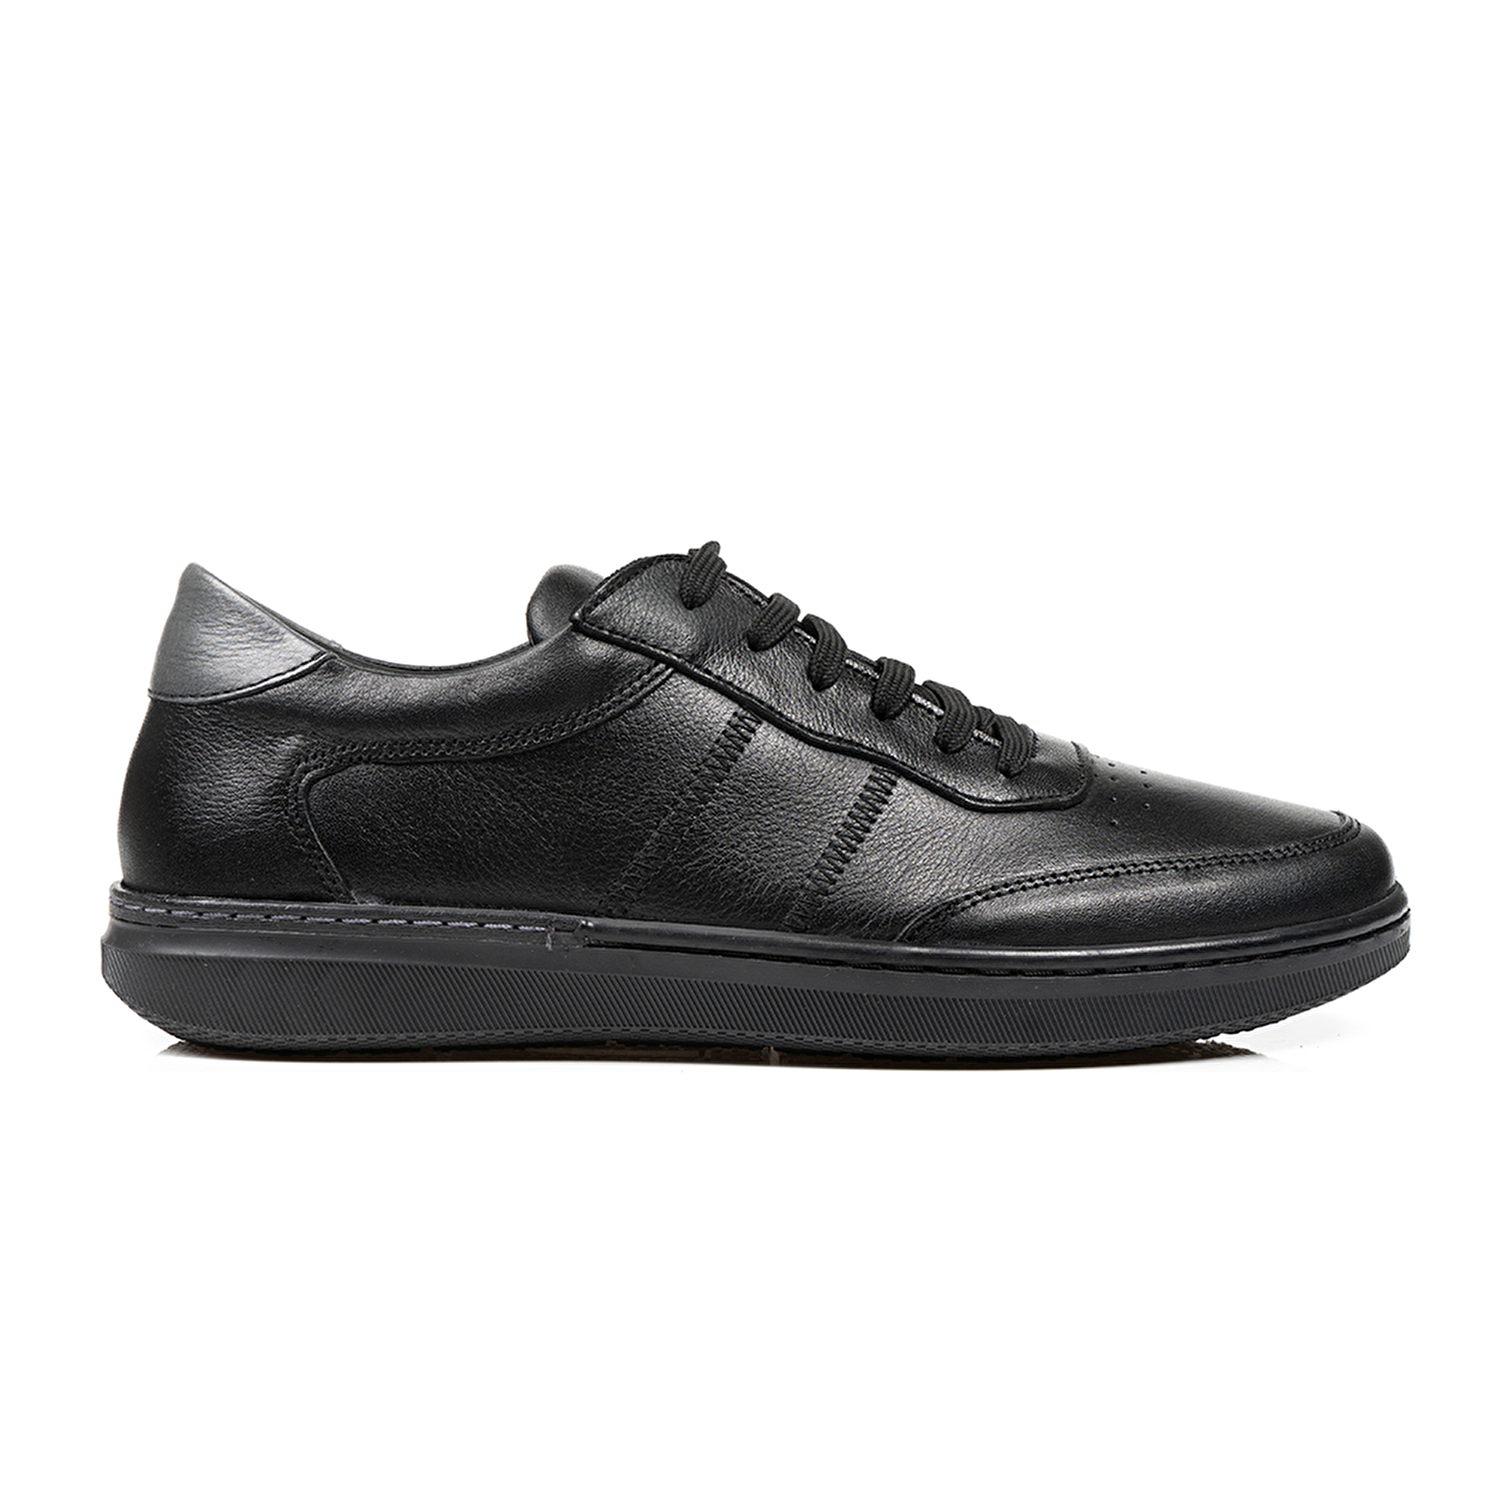 Klasik Erkek Ayakkabı Siyah 67905-1